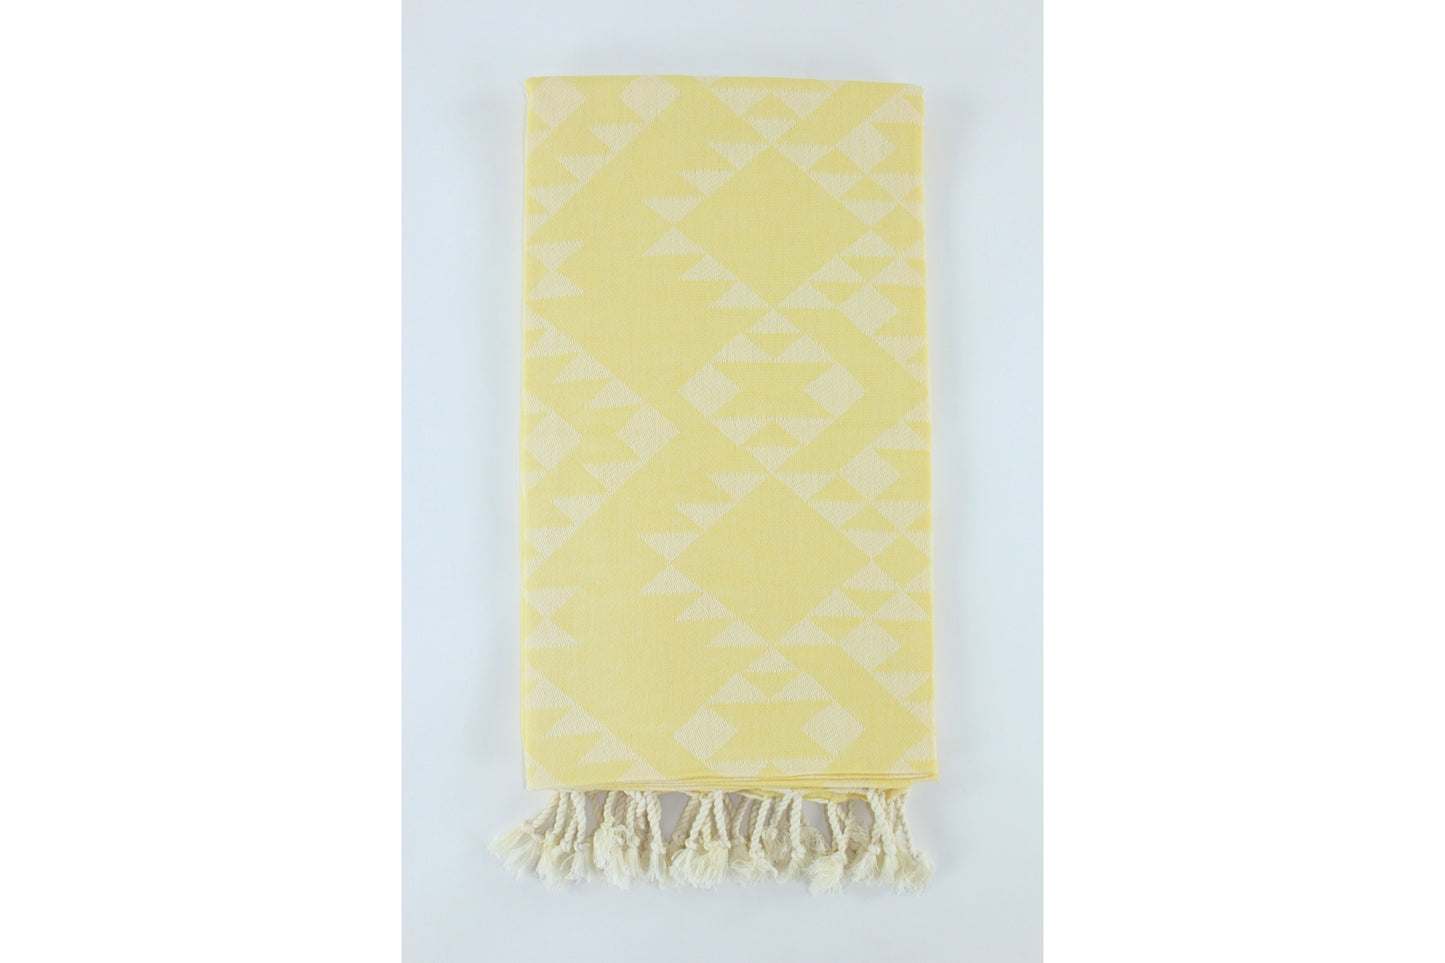 Premium Turkish Kilim Towel Peshtemal Fouta (Yellow)